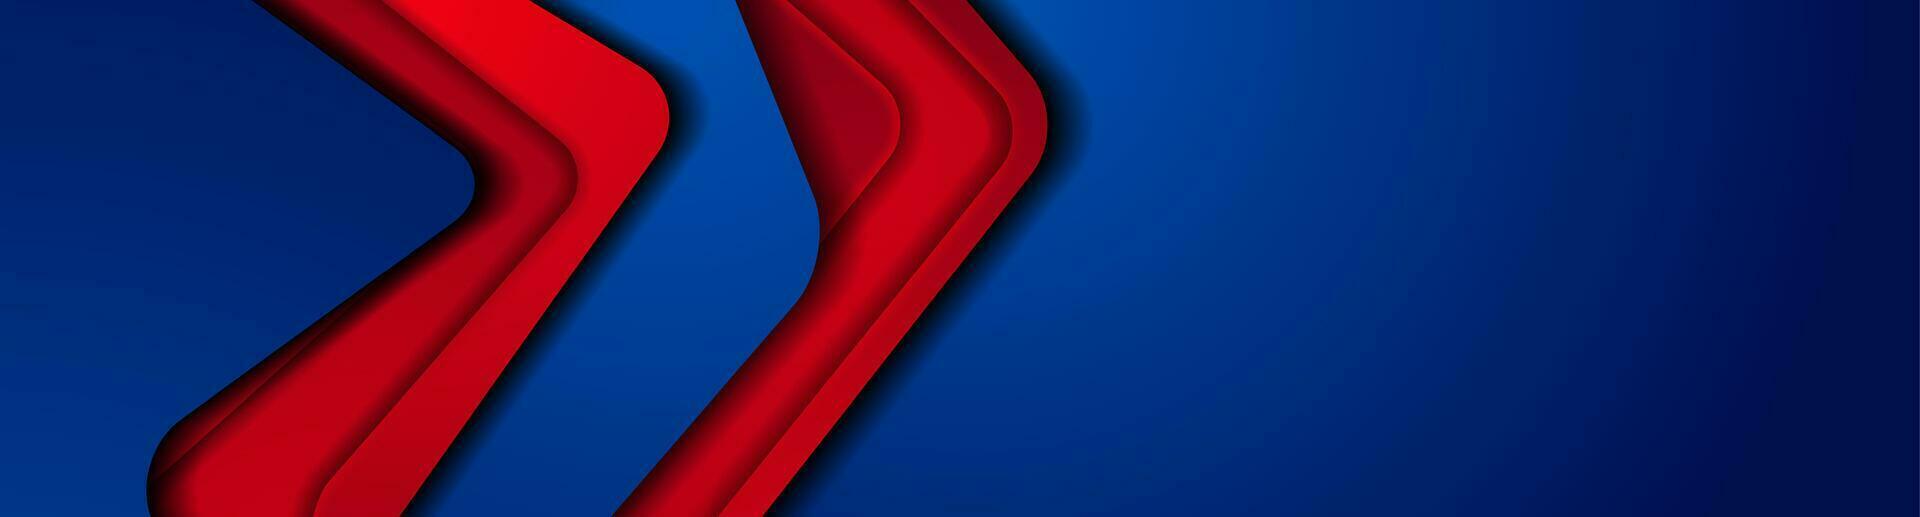 buio blu rosso astratto Tech aziendale bandiera design vettore